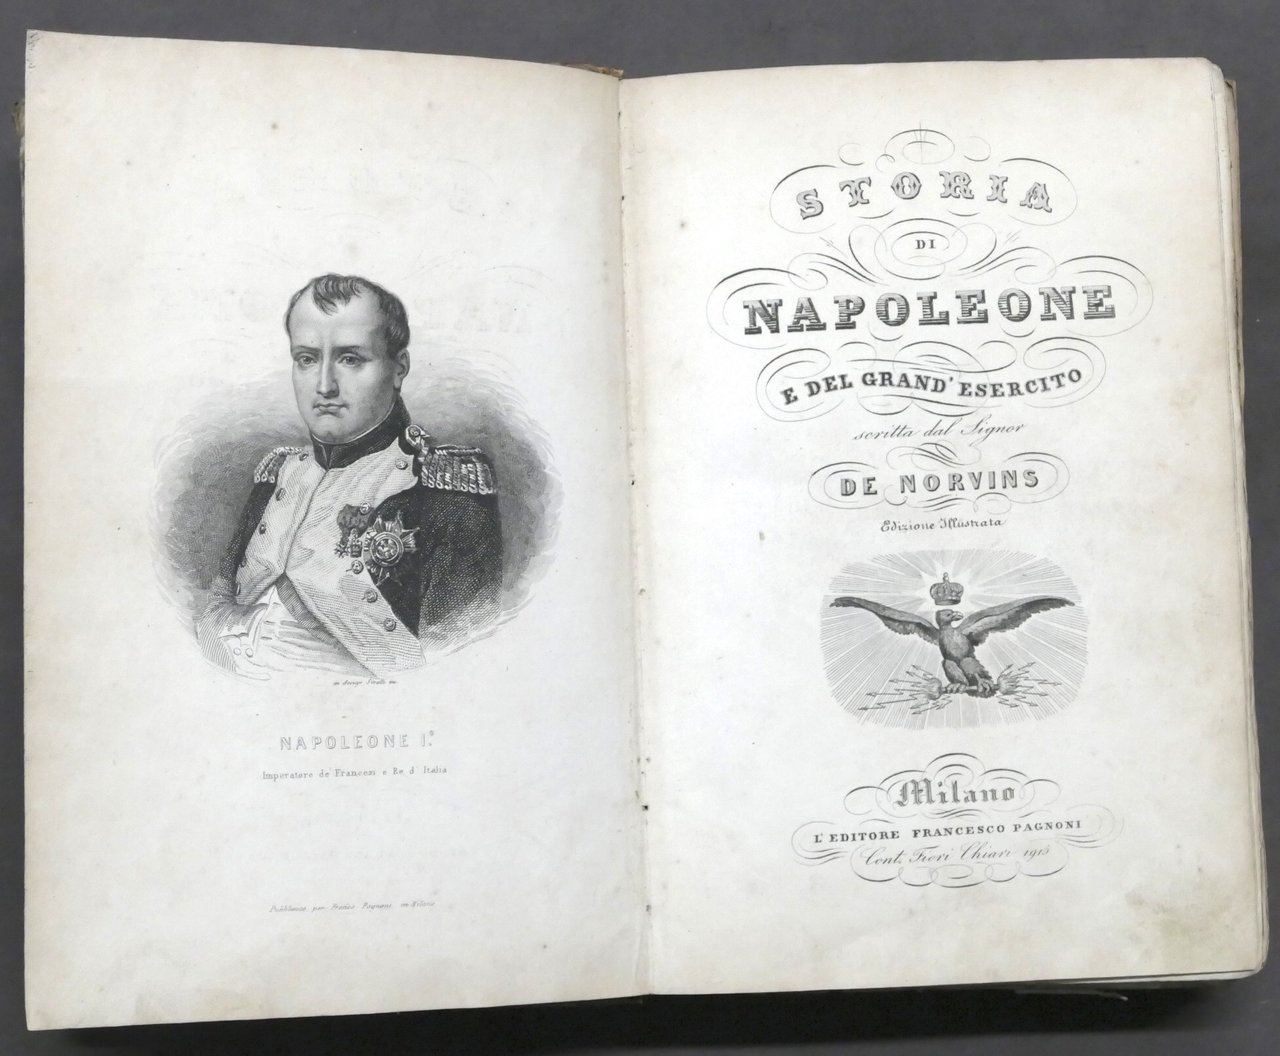 J. De Norvins - Storia di Napoleone e del grand'esercito …